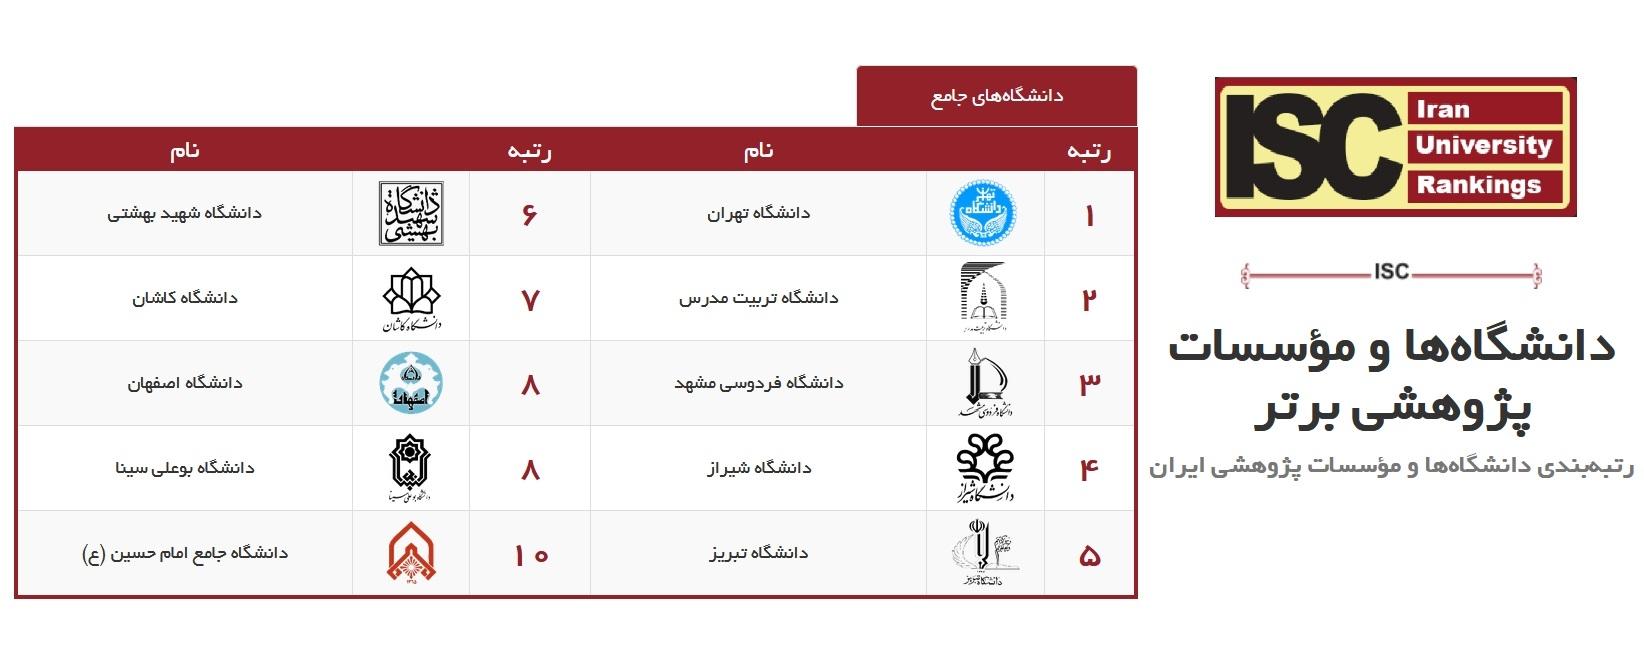 در آخرین رتبه بندی ISC، دانشگاه جامع امام حسین(ع) جزء 10 دانشگاه برتر کشور قرار گرفت